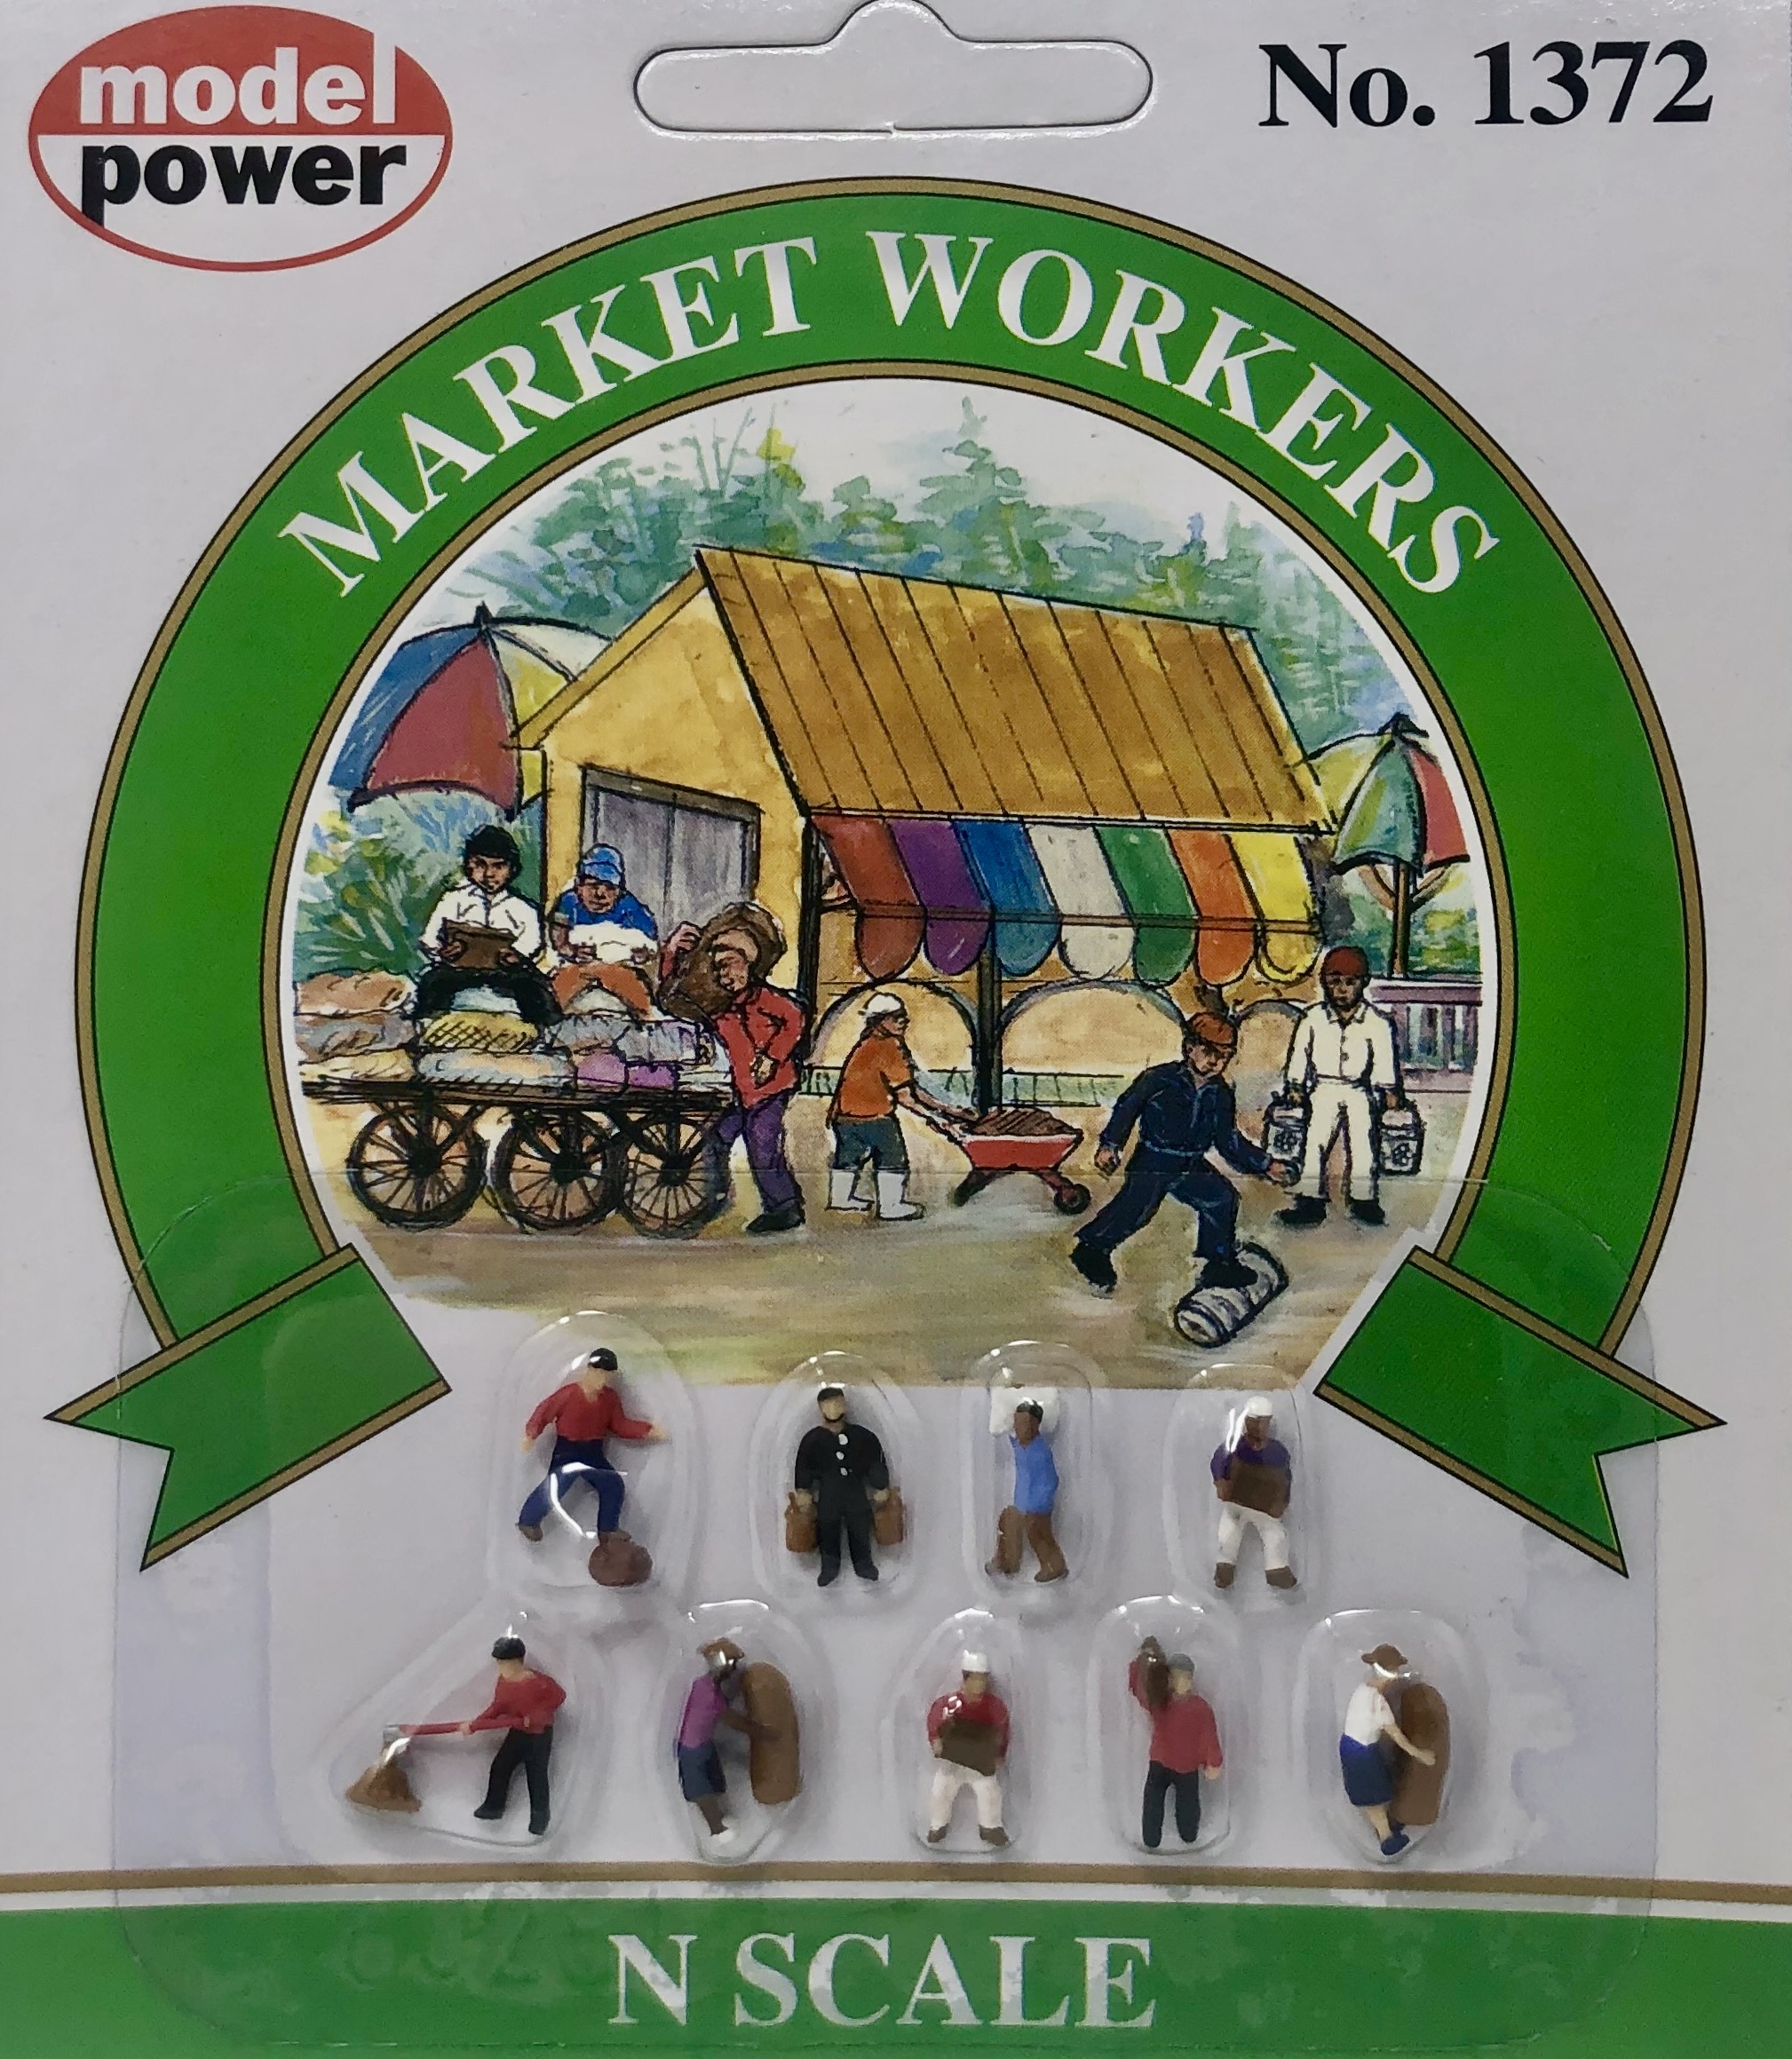 N Scale - Model Power - 1372 - Figures, People, Workers - People